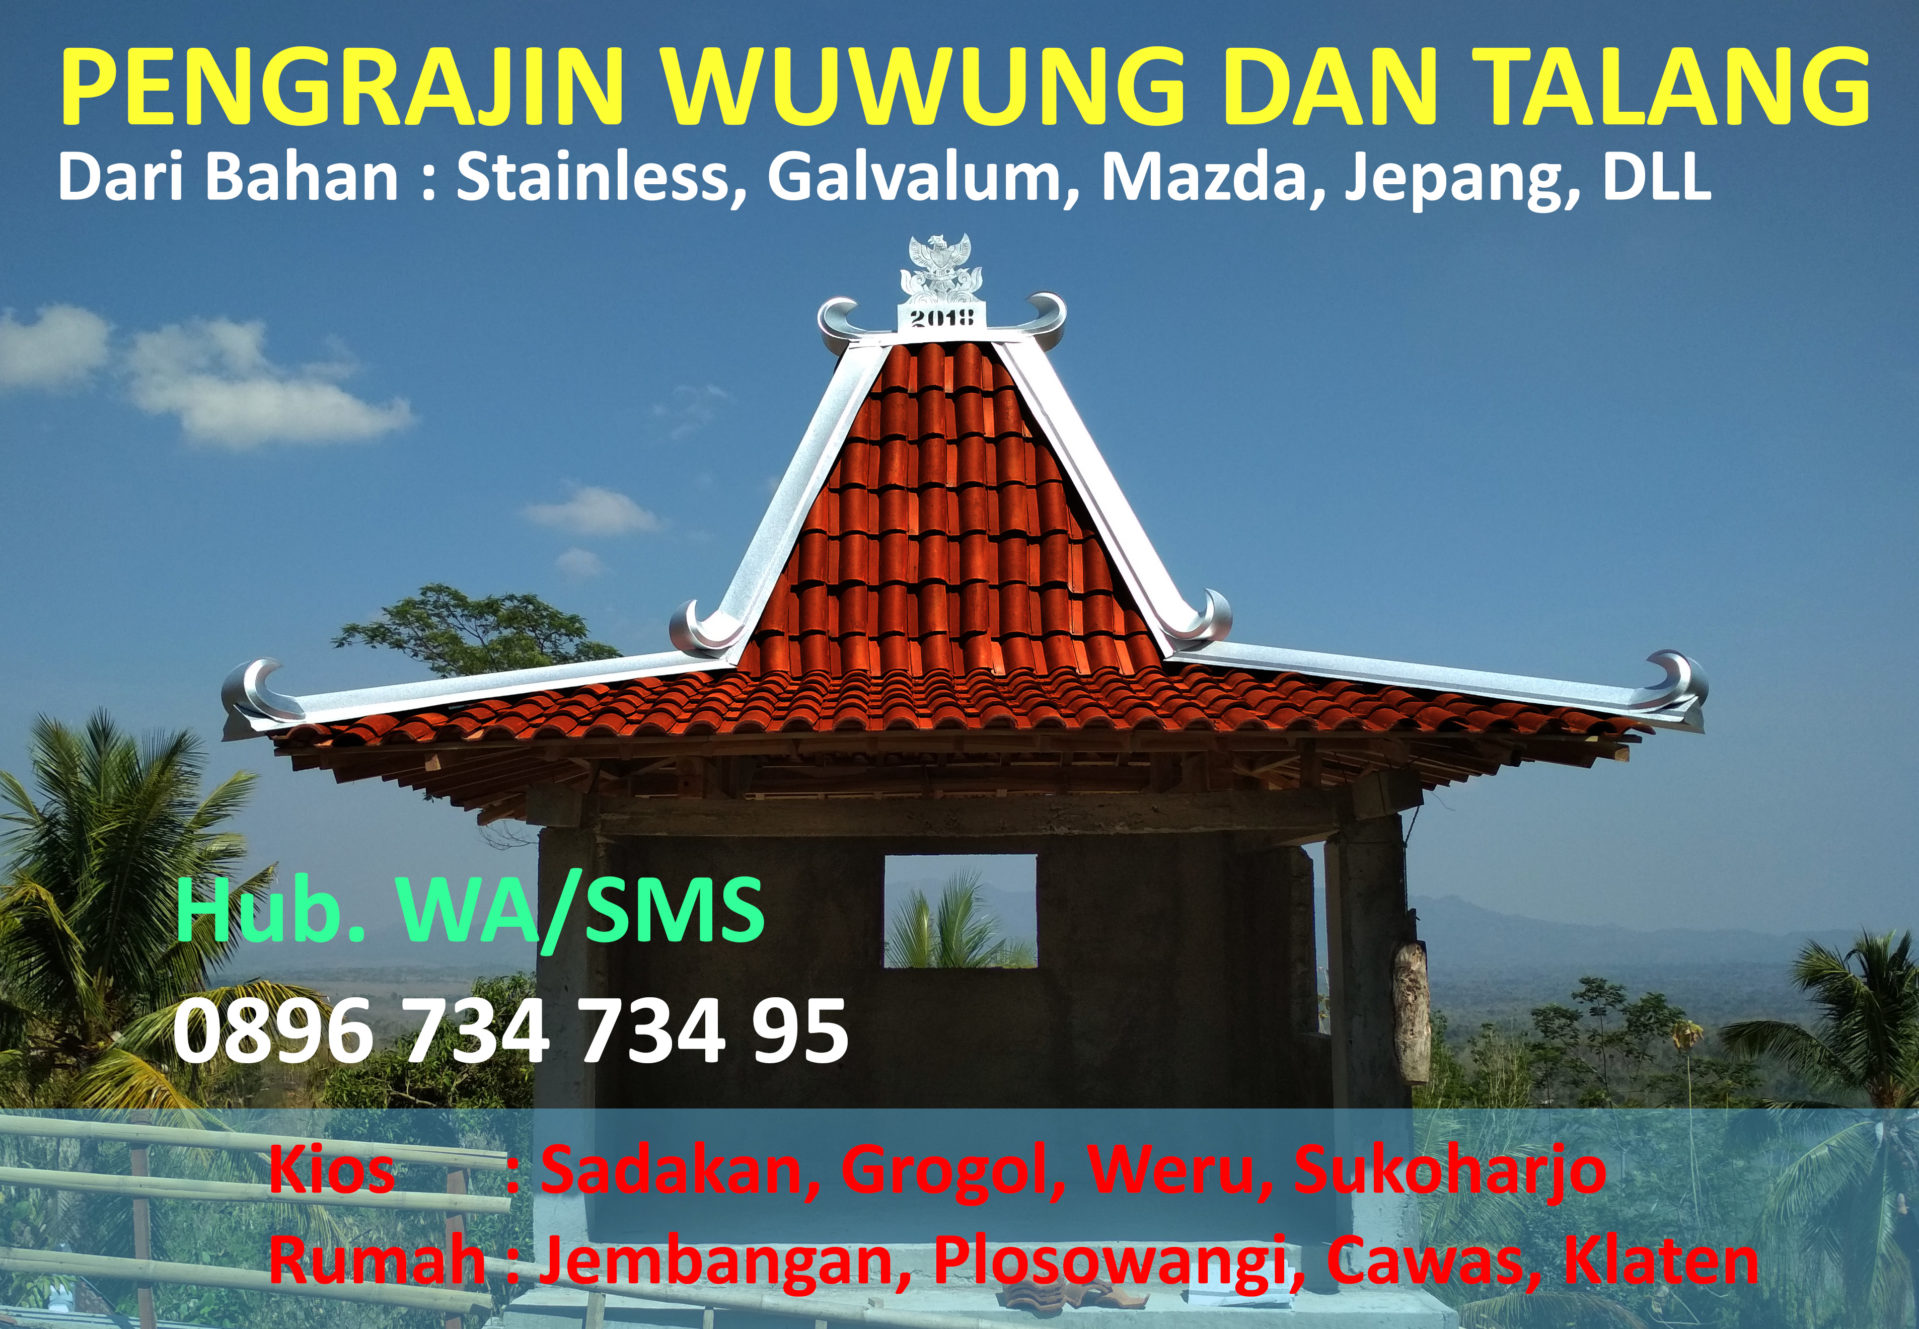 Sapto Group Wuwung Seng Talang Tritis Galvalum 